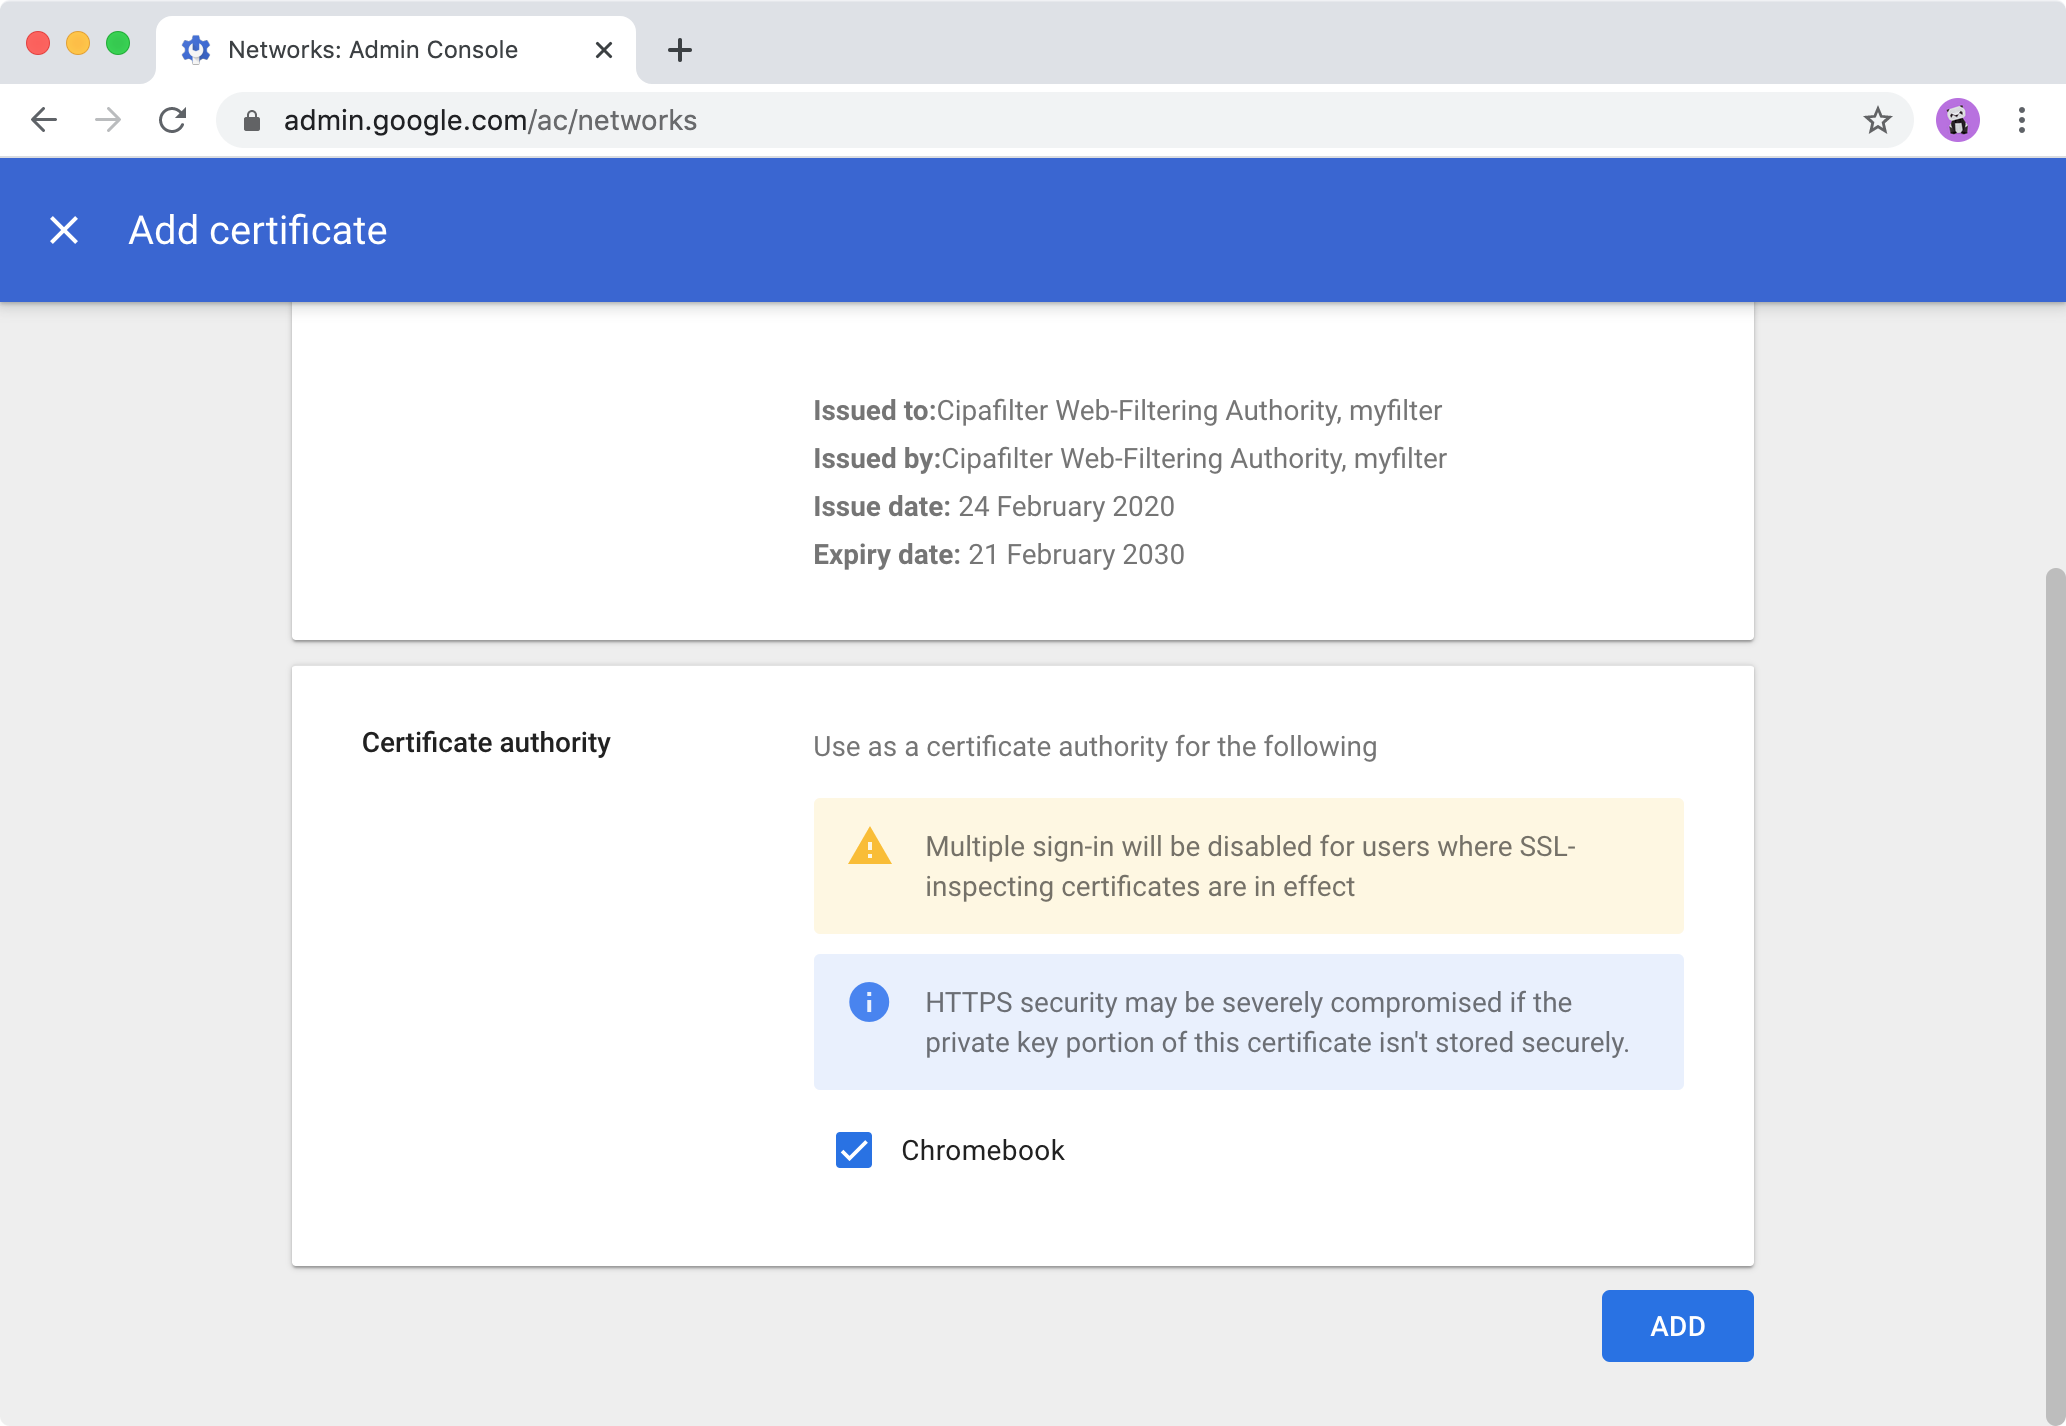 Google Admin console > Add certificate